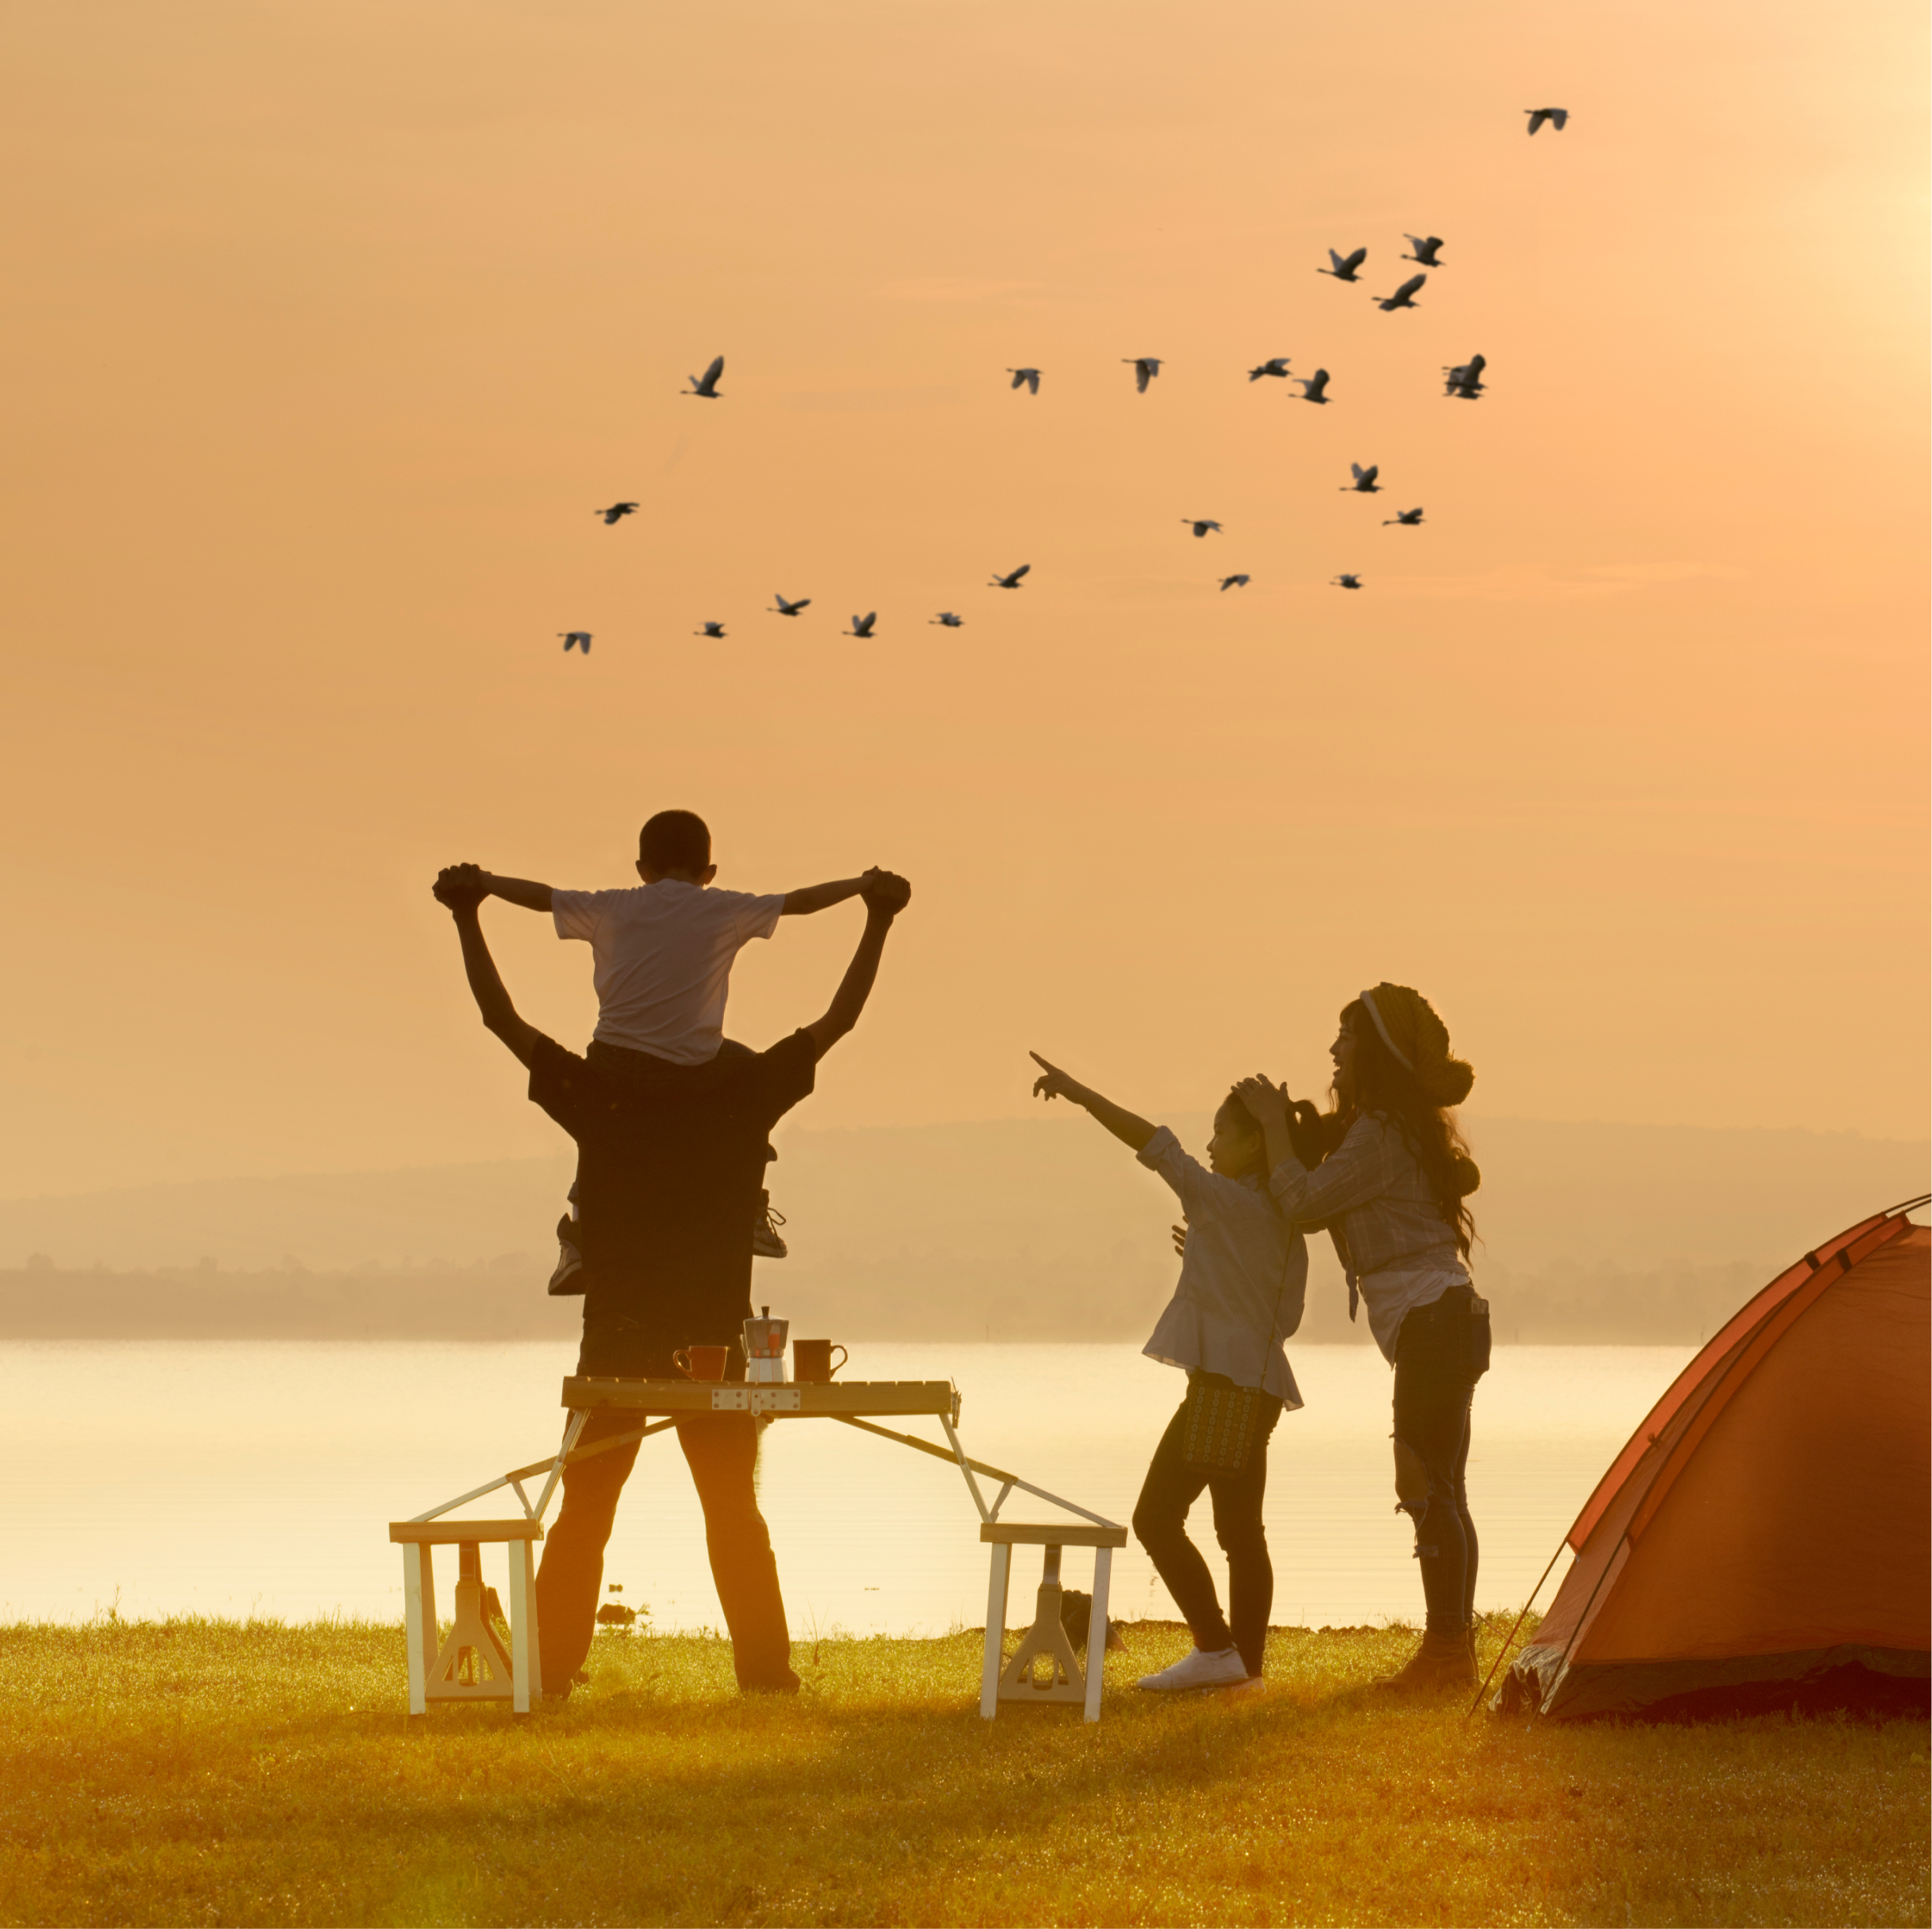 Família a acampar e disfrutar do por do sol